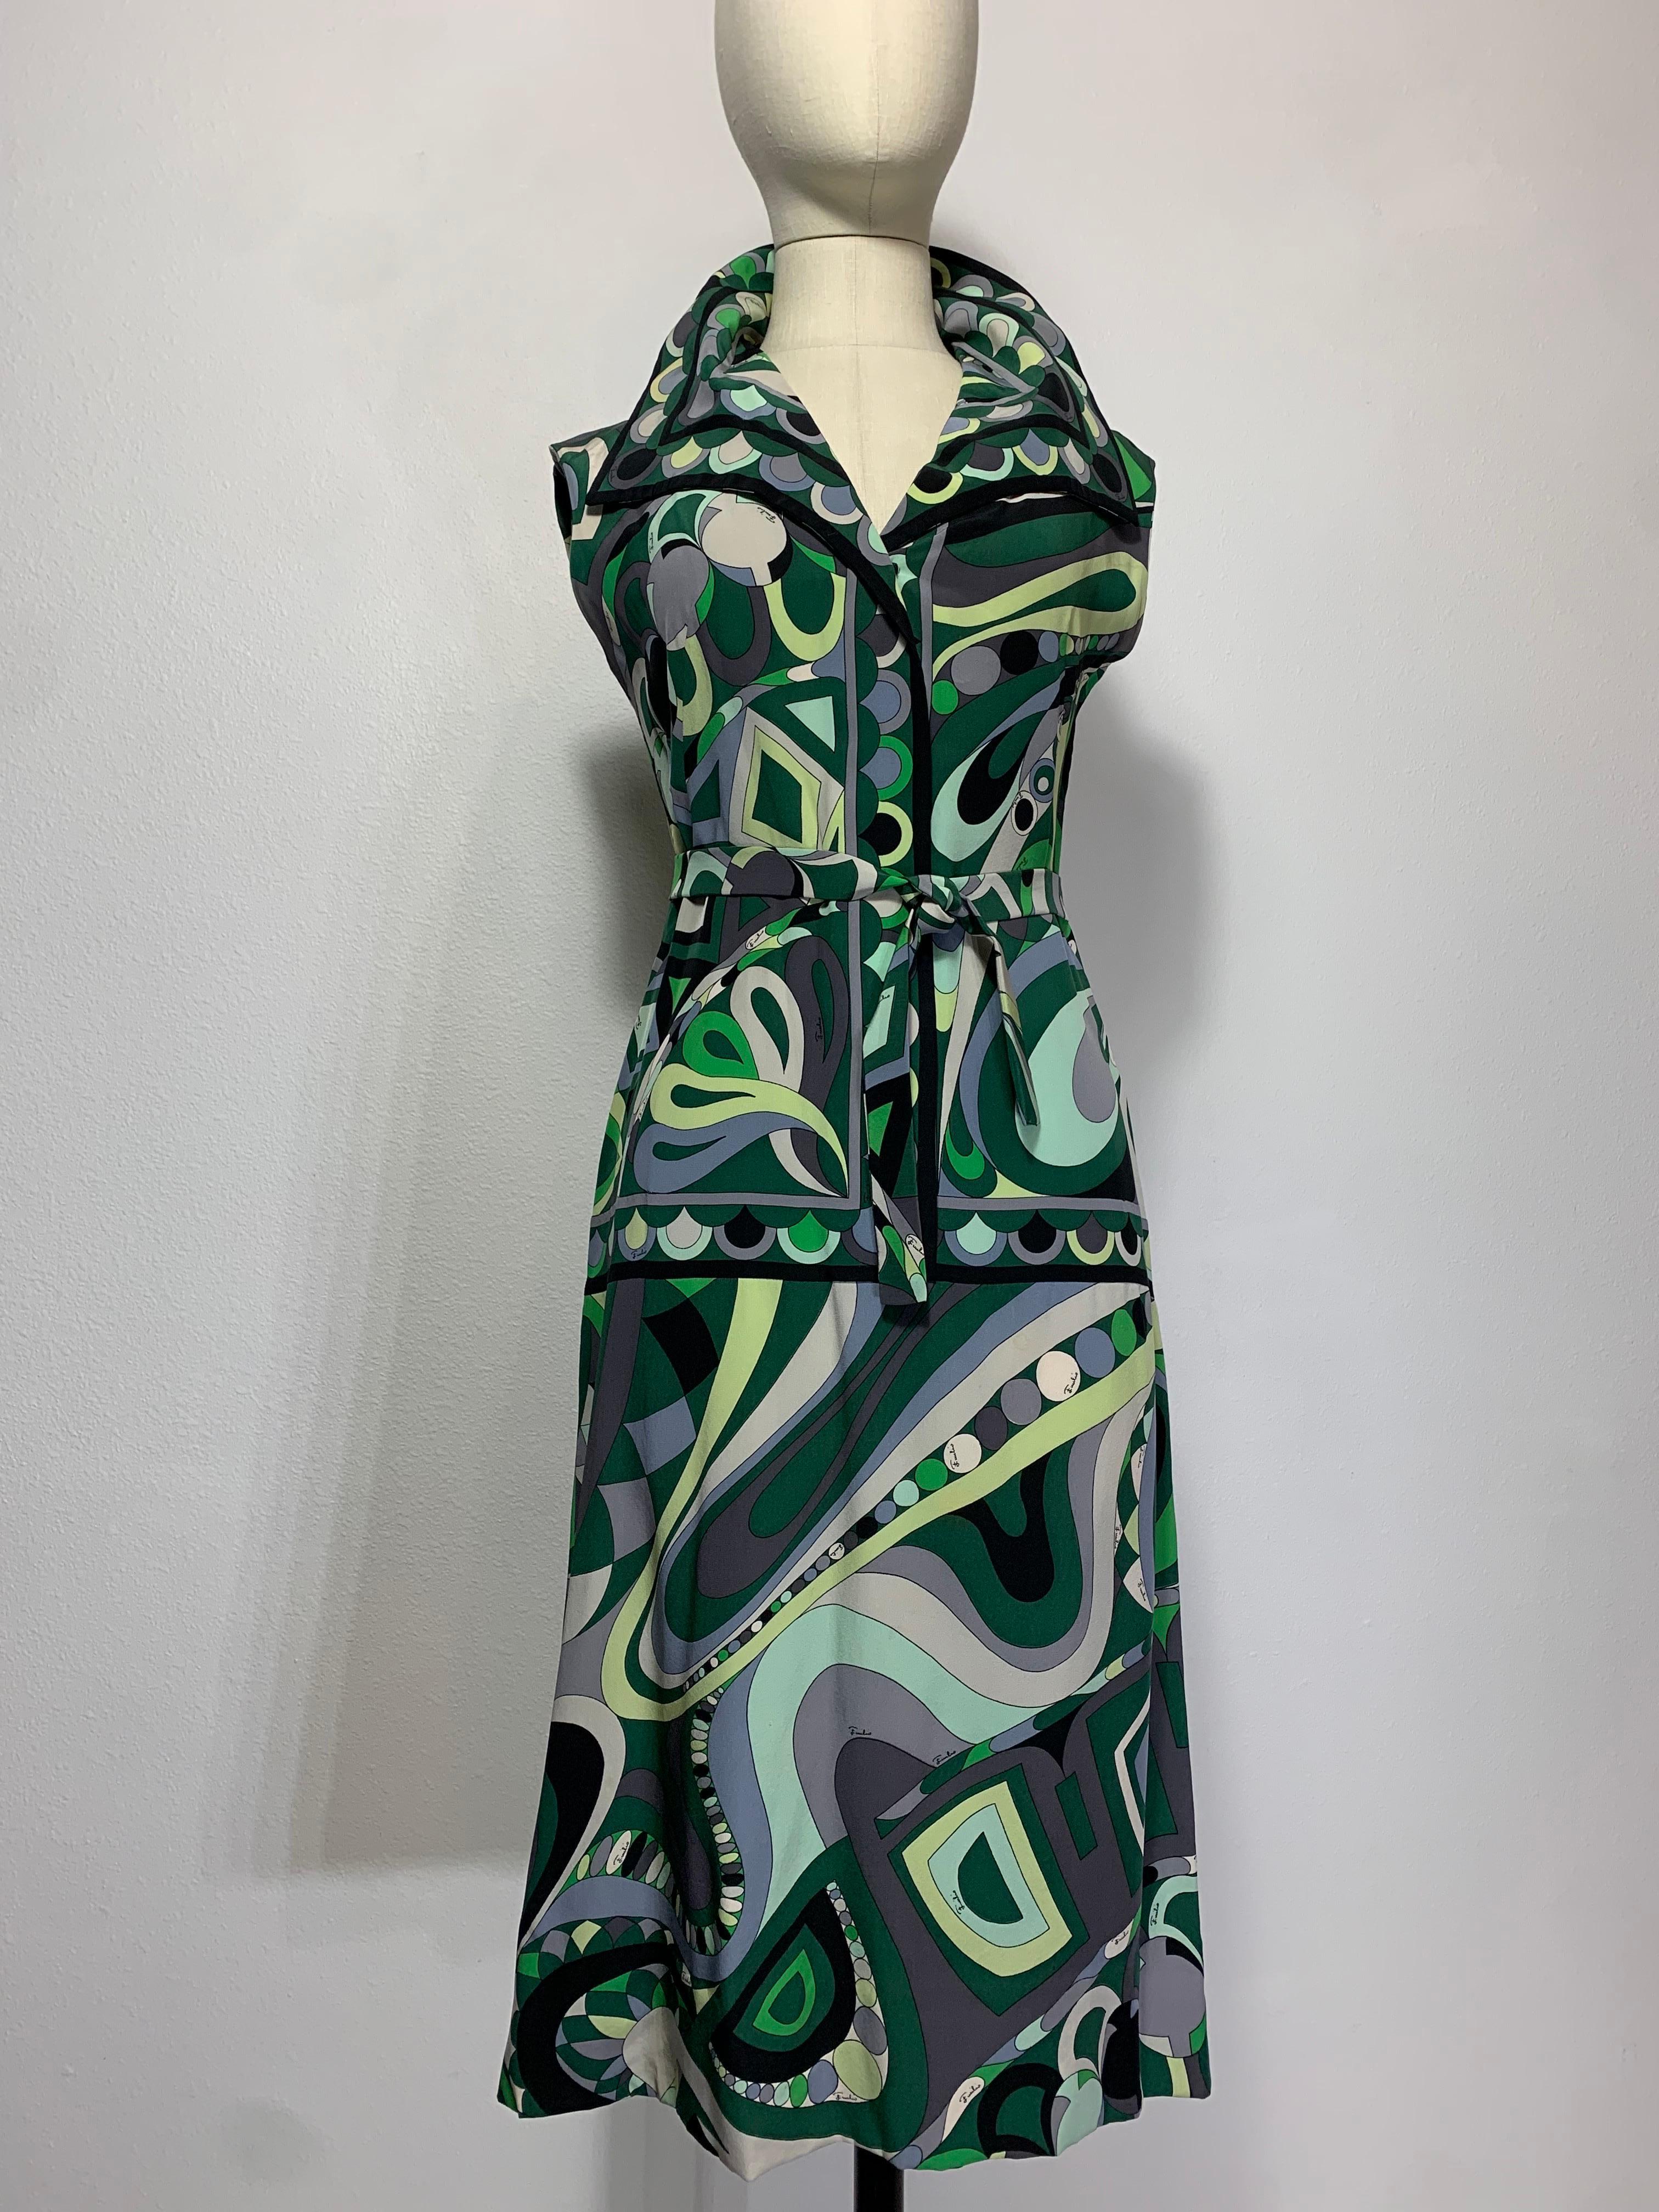 Emilio Pucci Mod Print Seidenkleid aus den späten 1960er Jahren: Ikonischer psychedelischer Druck im Pucci-Stil in Grün-, Schwarz- und Grautönen. Dieses ärmellose Kleid in A-Linie wirkt wie ein Zweiteiler mit breitem Kragen. Inklusive passendem